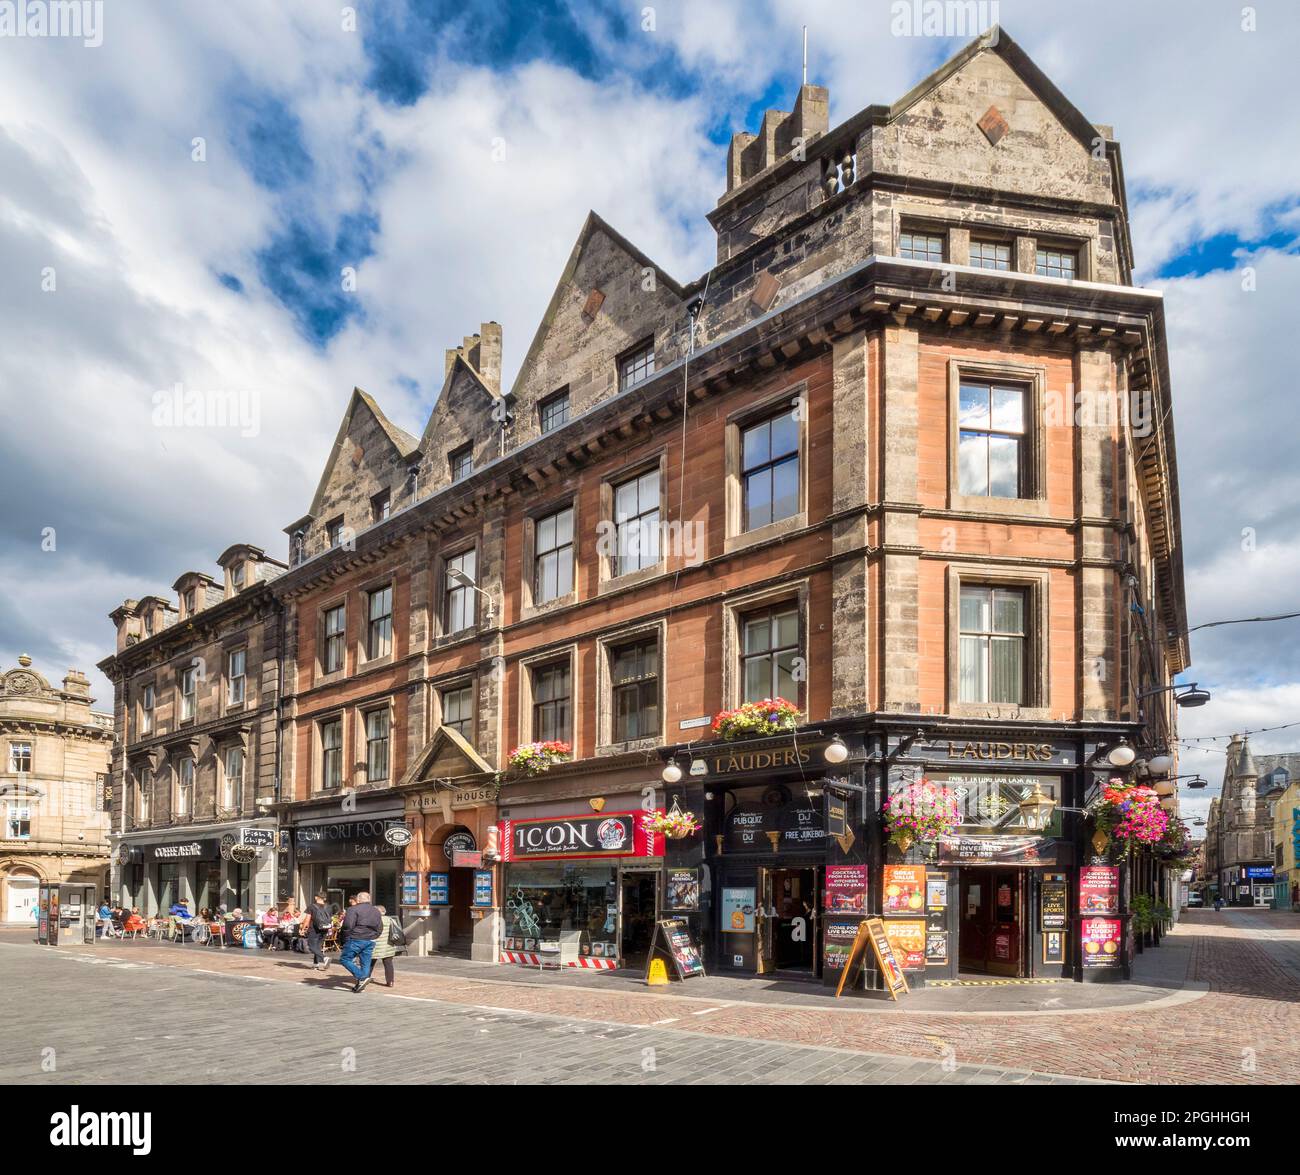 5 settembre 2022: Inverness, Highland, Scozia - scena di strada in Church Street, Inverness, con pub, caffè sul marciapiede, negozi, persone. Foto Stock